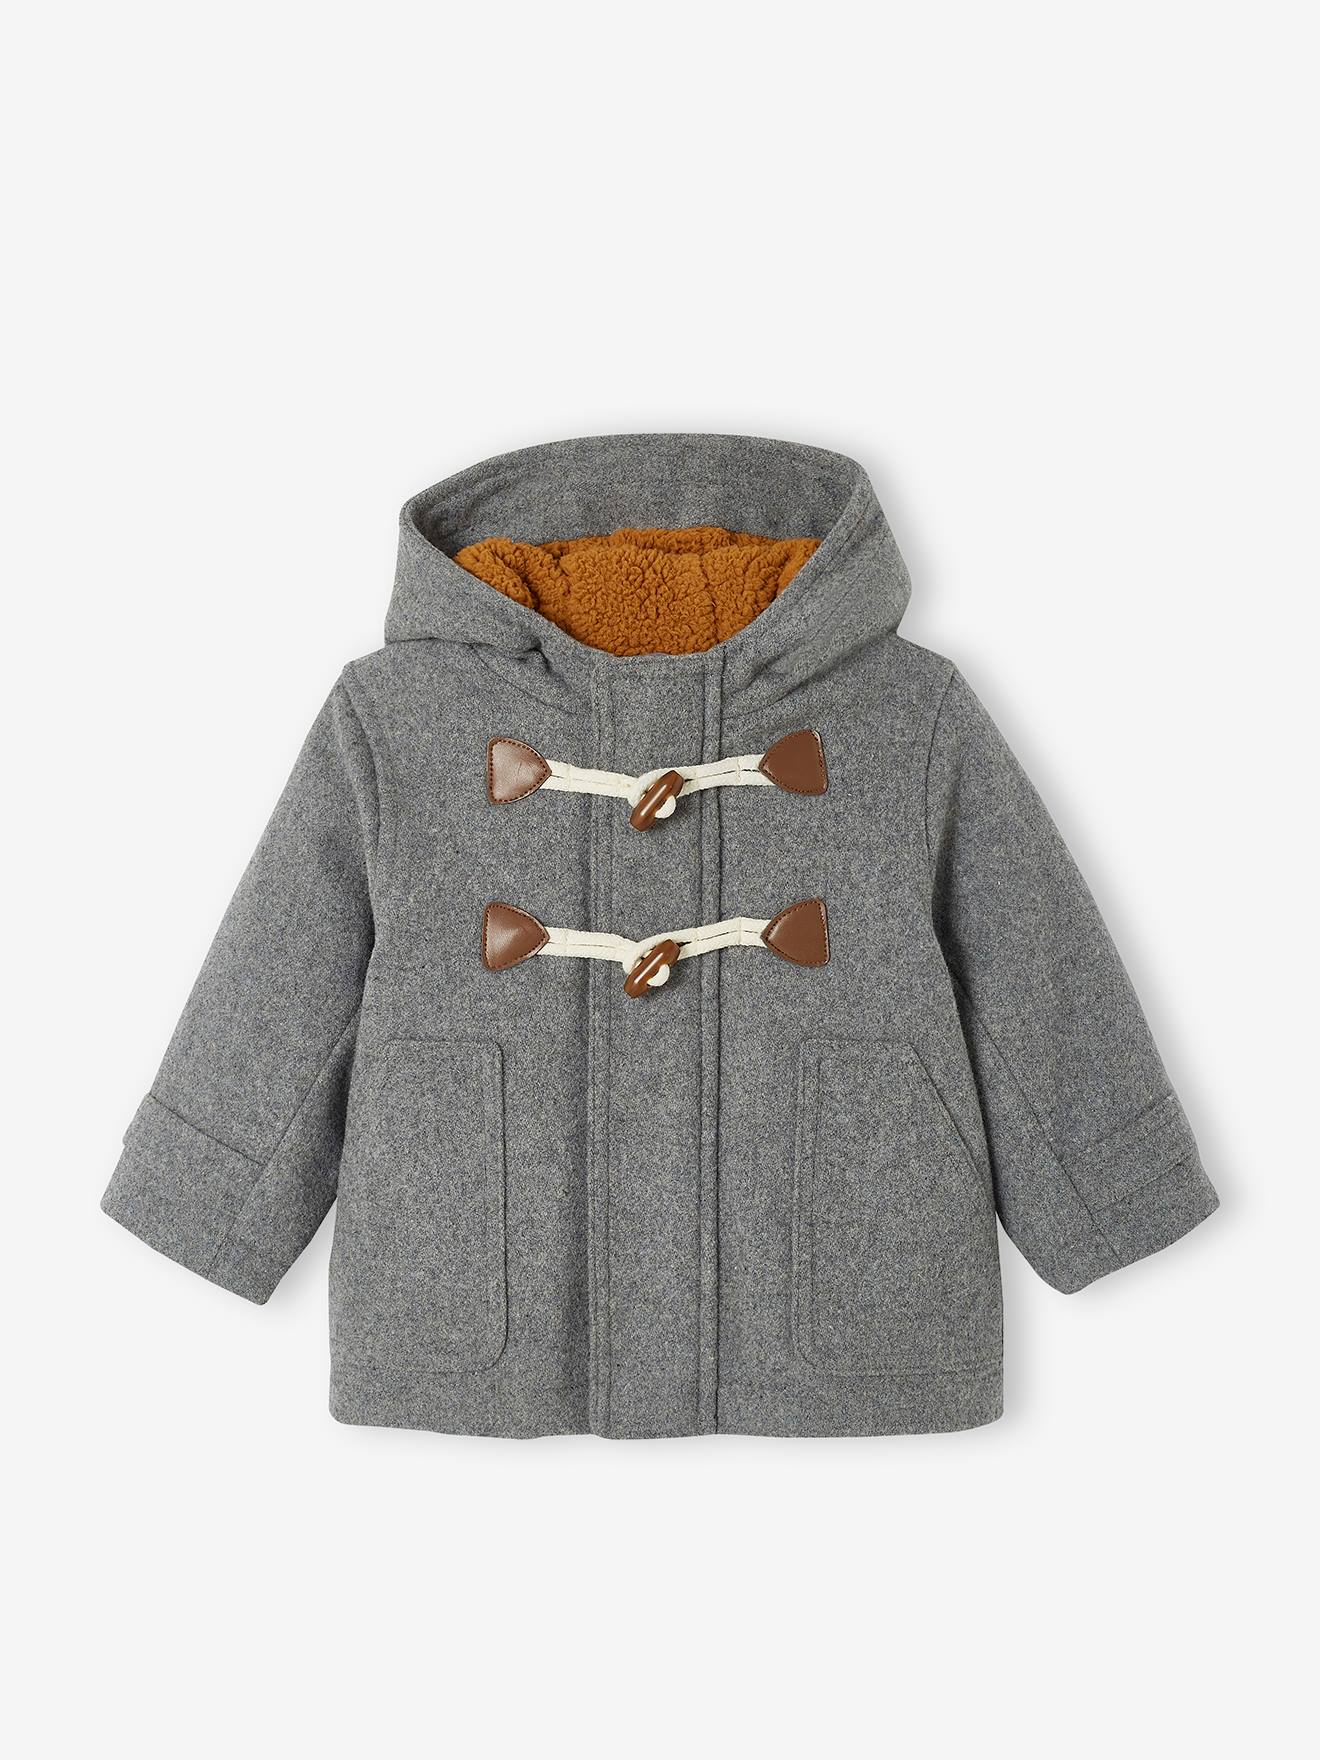 Manteau duffle-coat bébé avec capuche gris chine